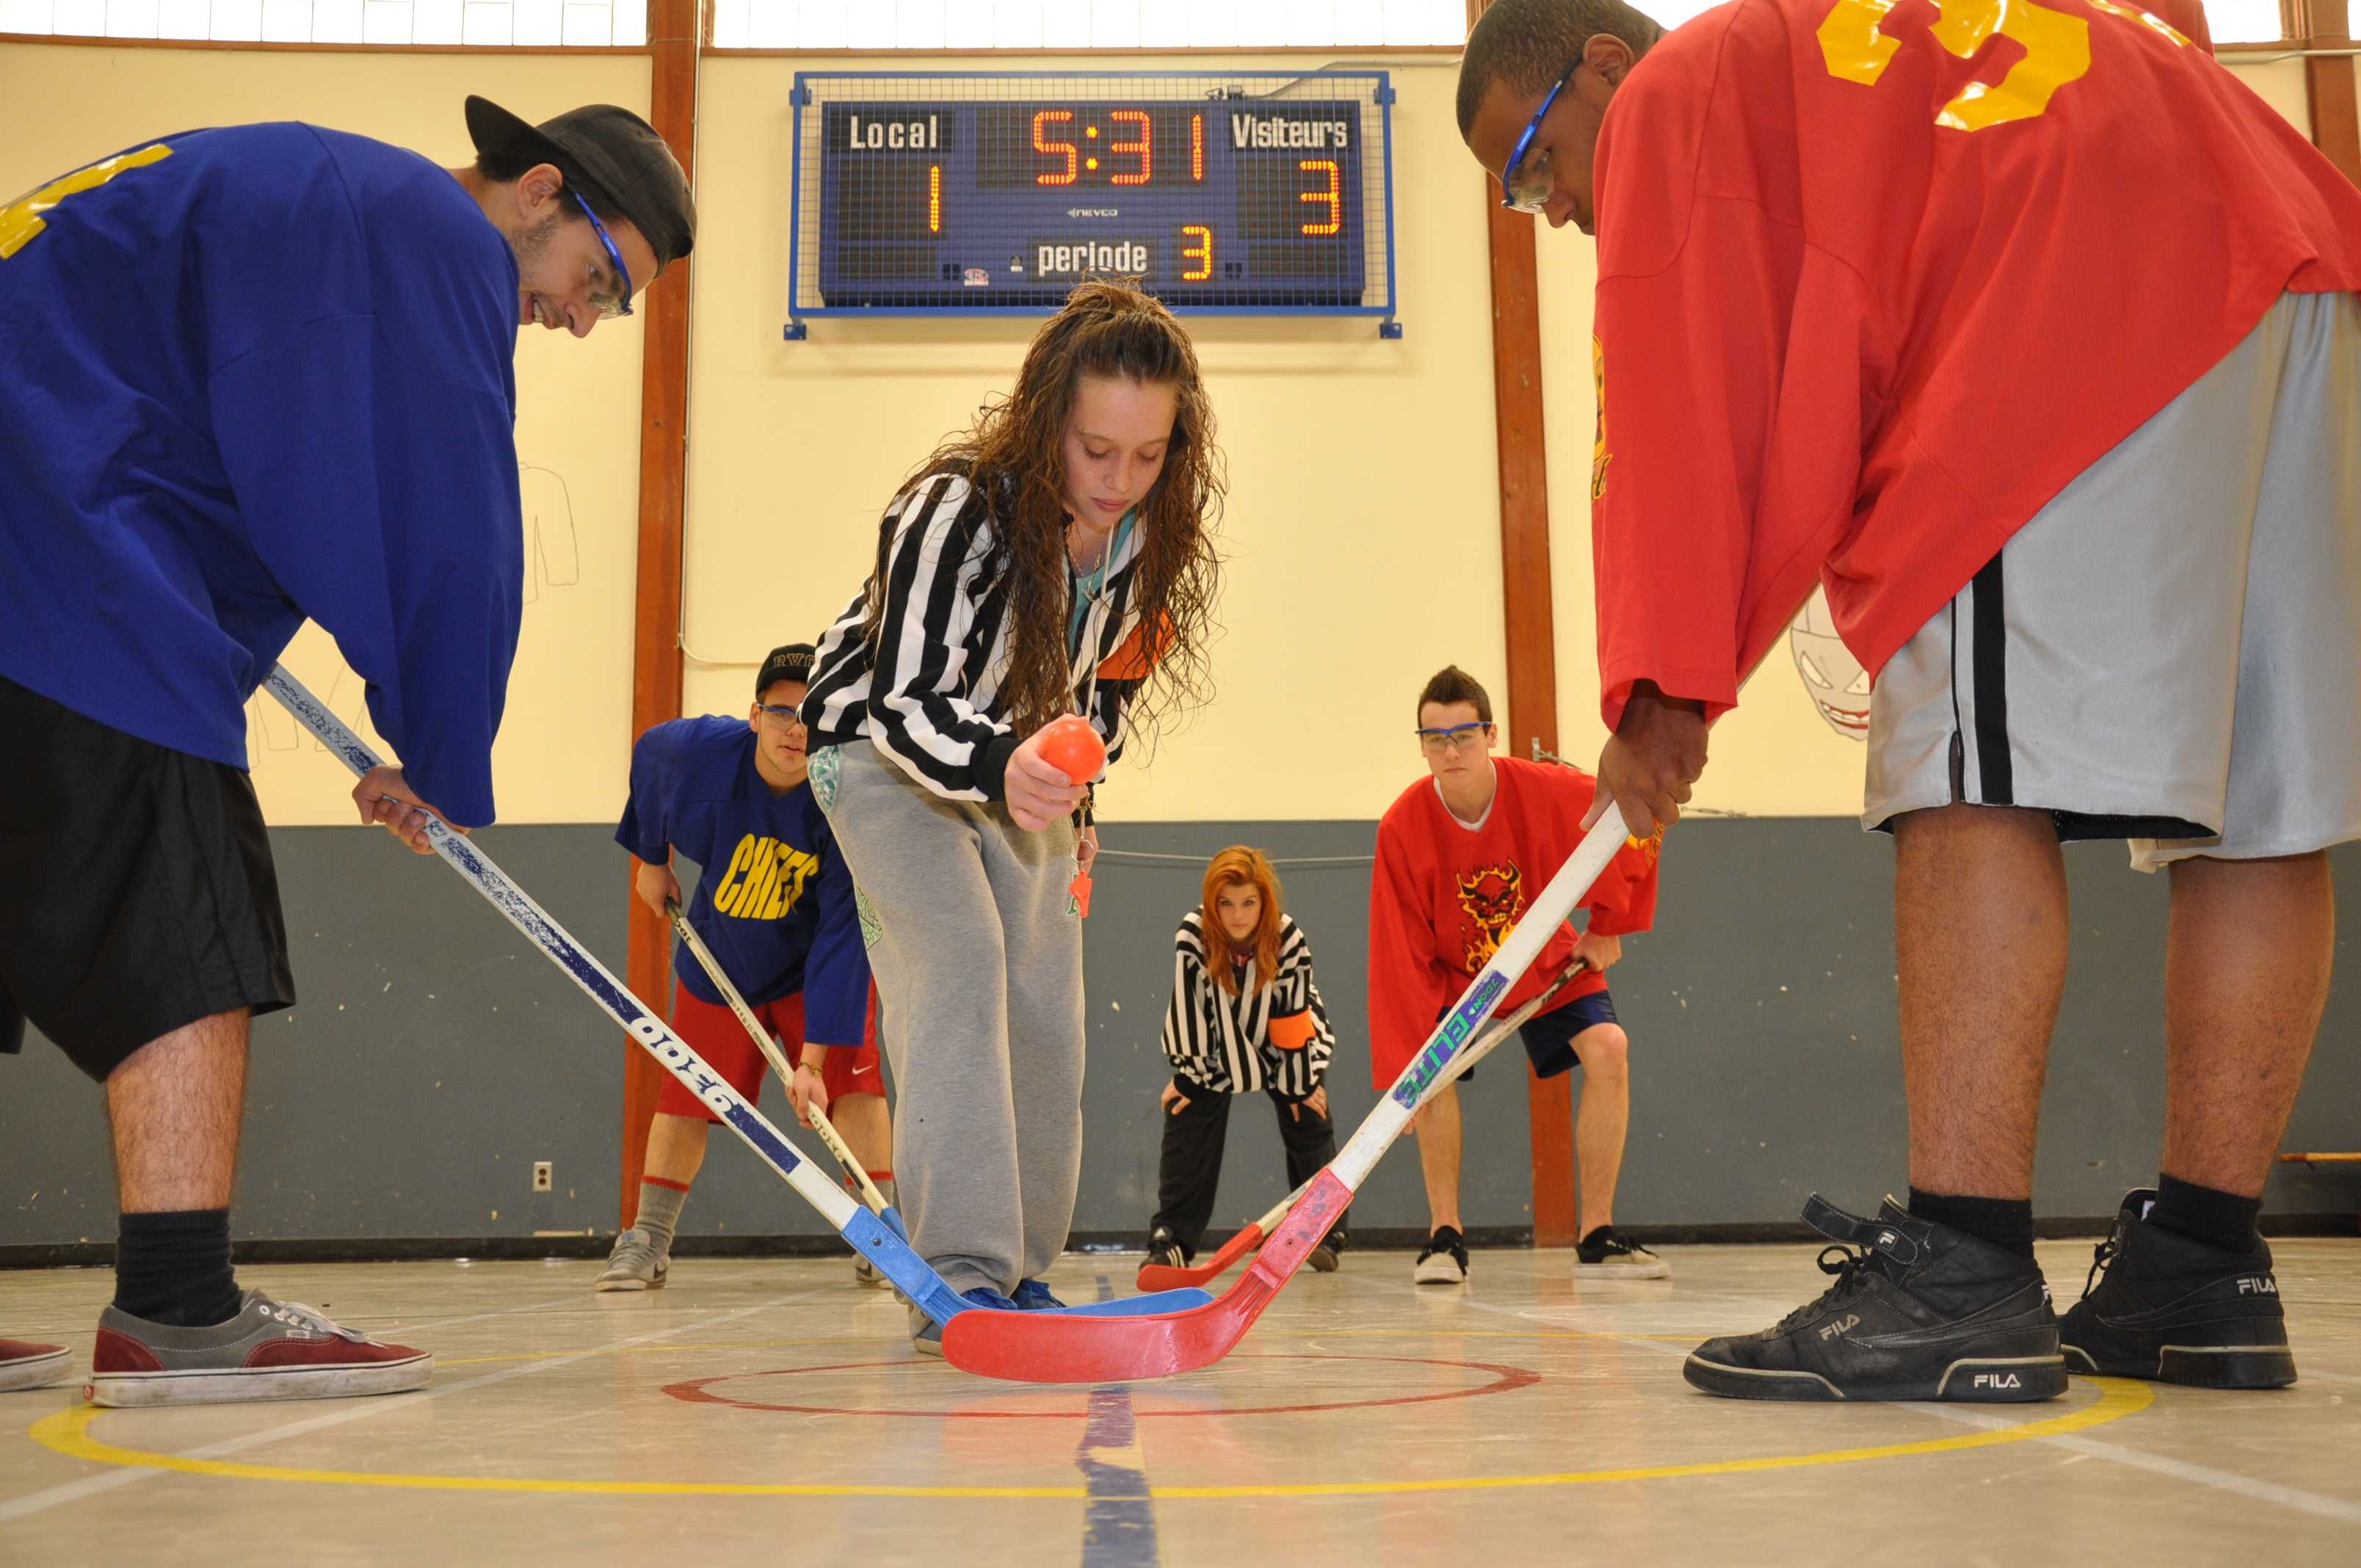 Pour améliorer l’expérience de jeu, les centres de  dekhockey  du Québec ajoutent un tableau de pointage Nevco.